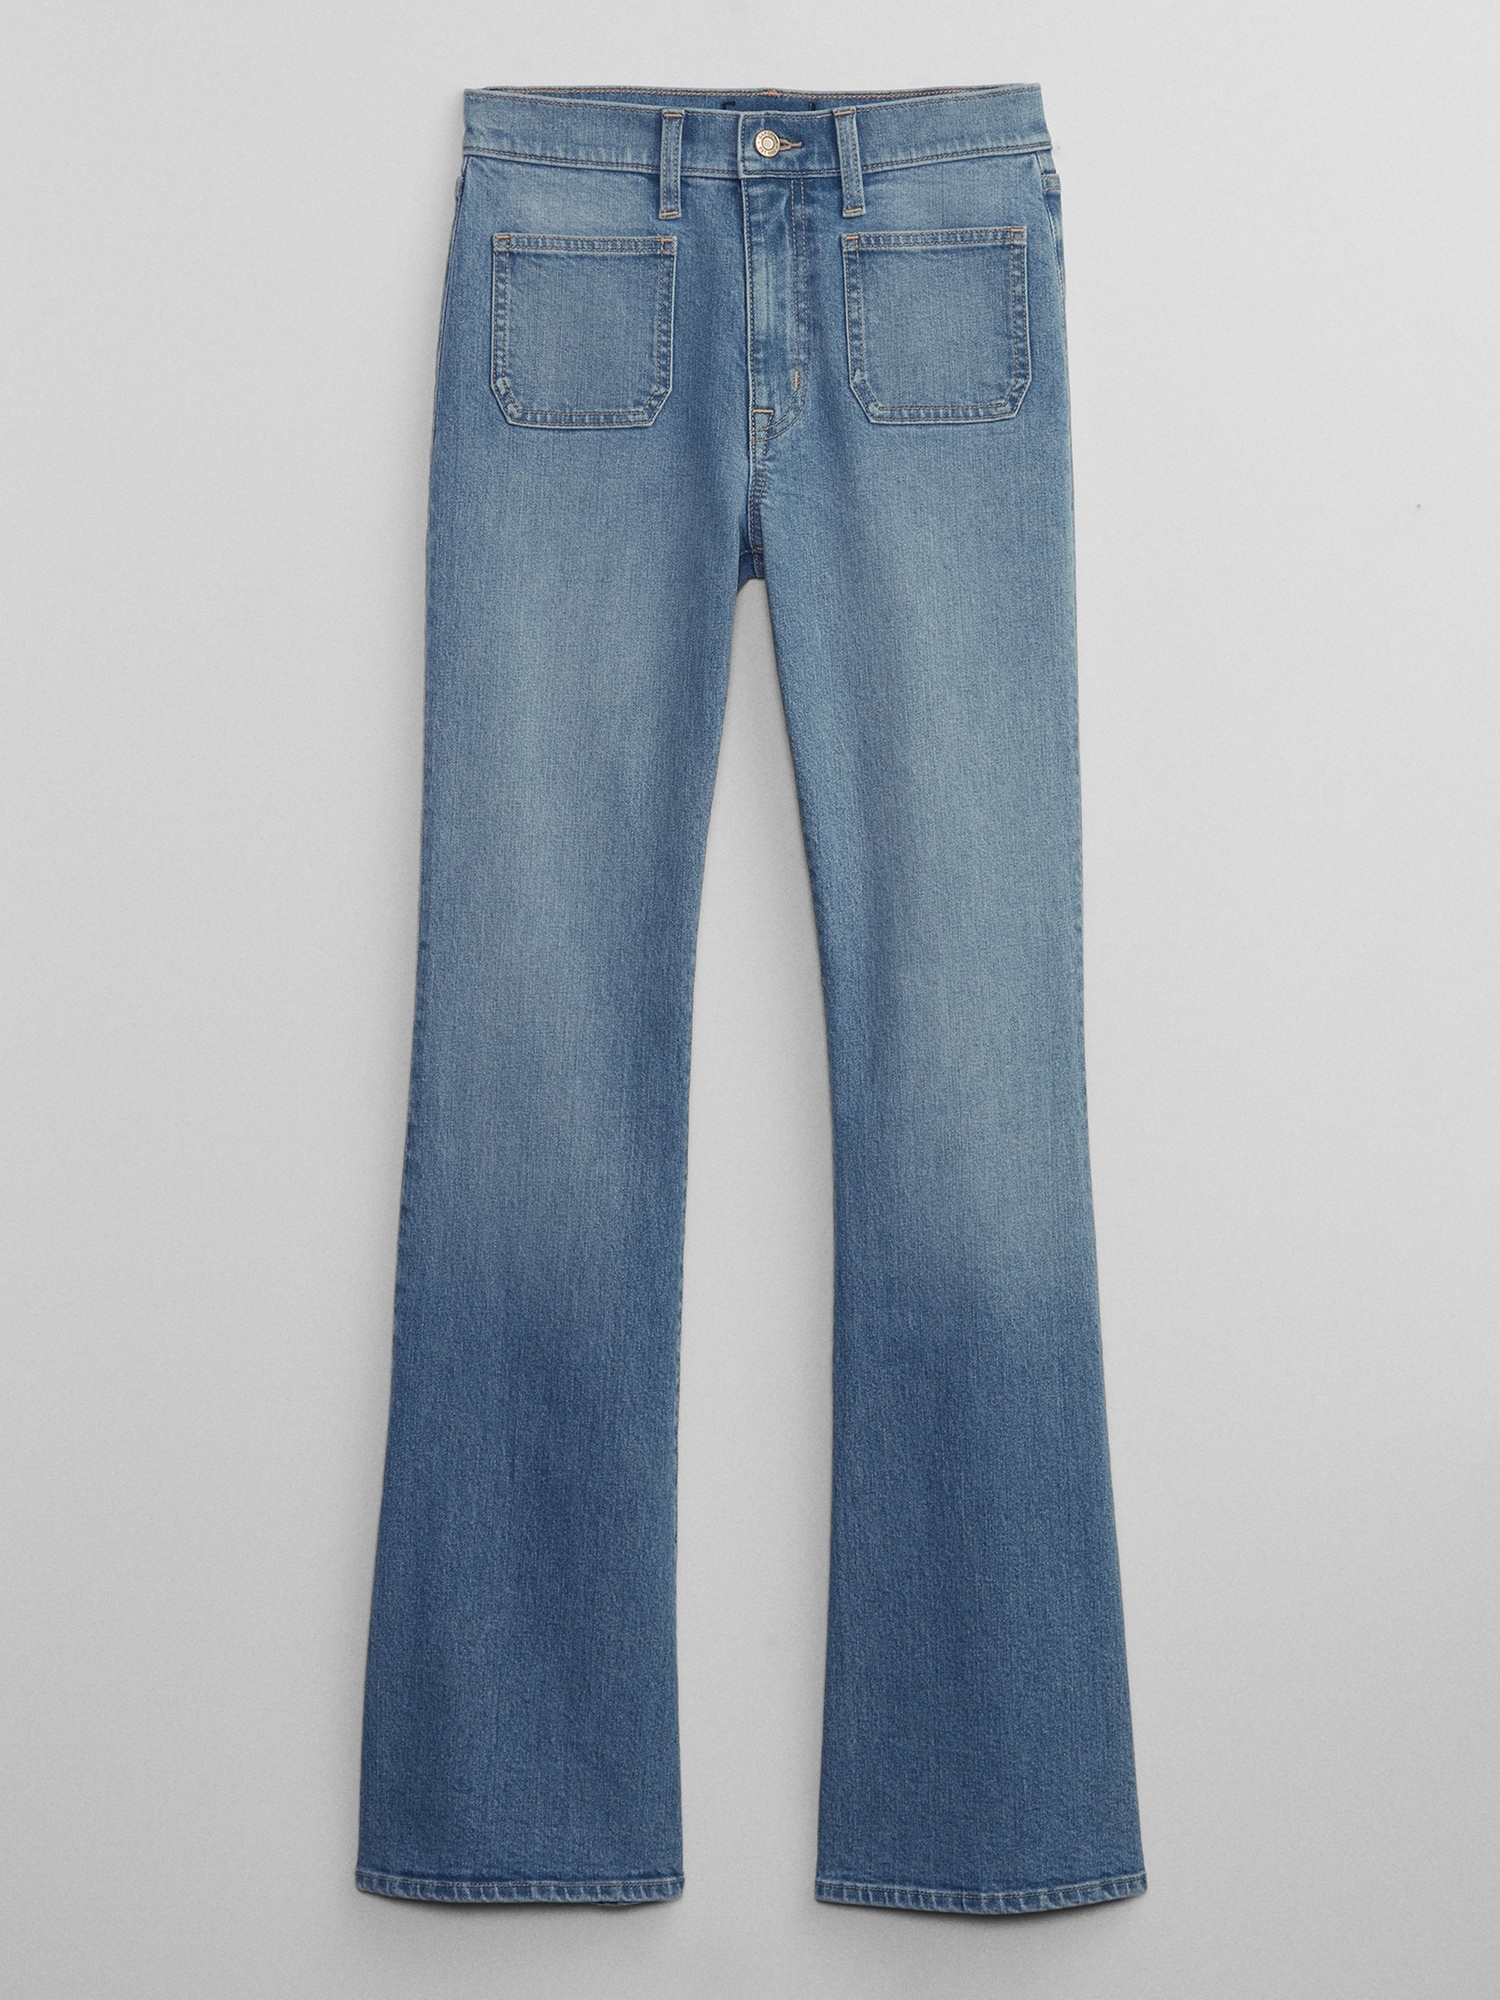 70s High Waisted Denim Jeans, Landlubbers – The Hip Zipper Nashville